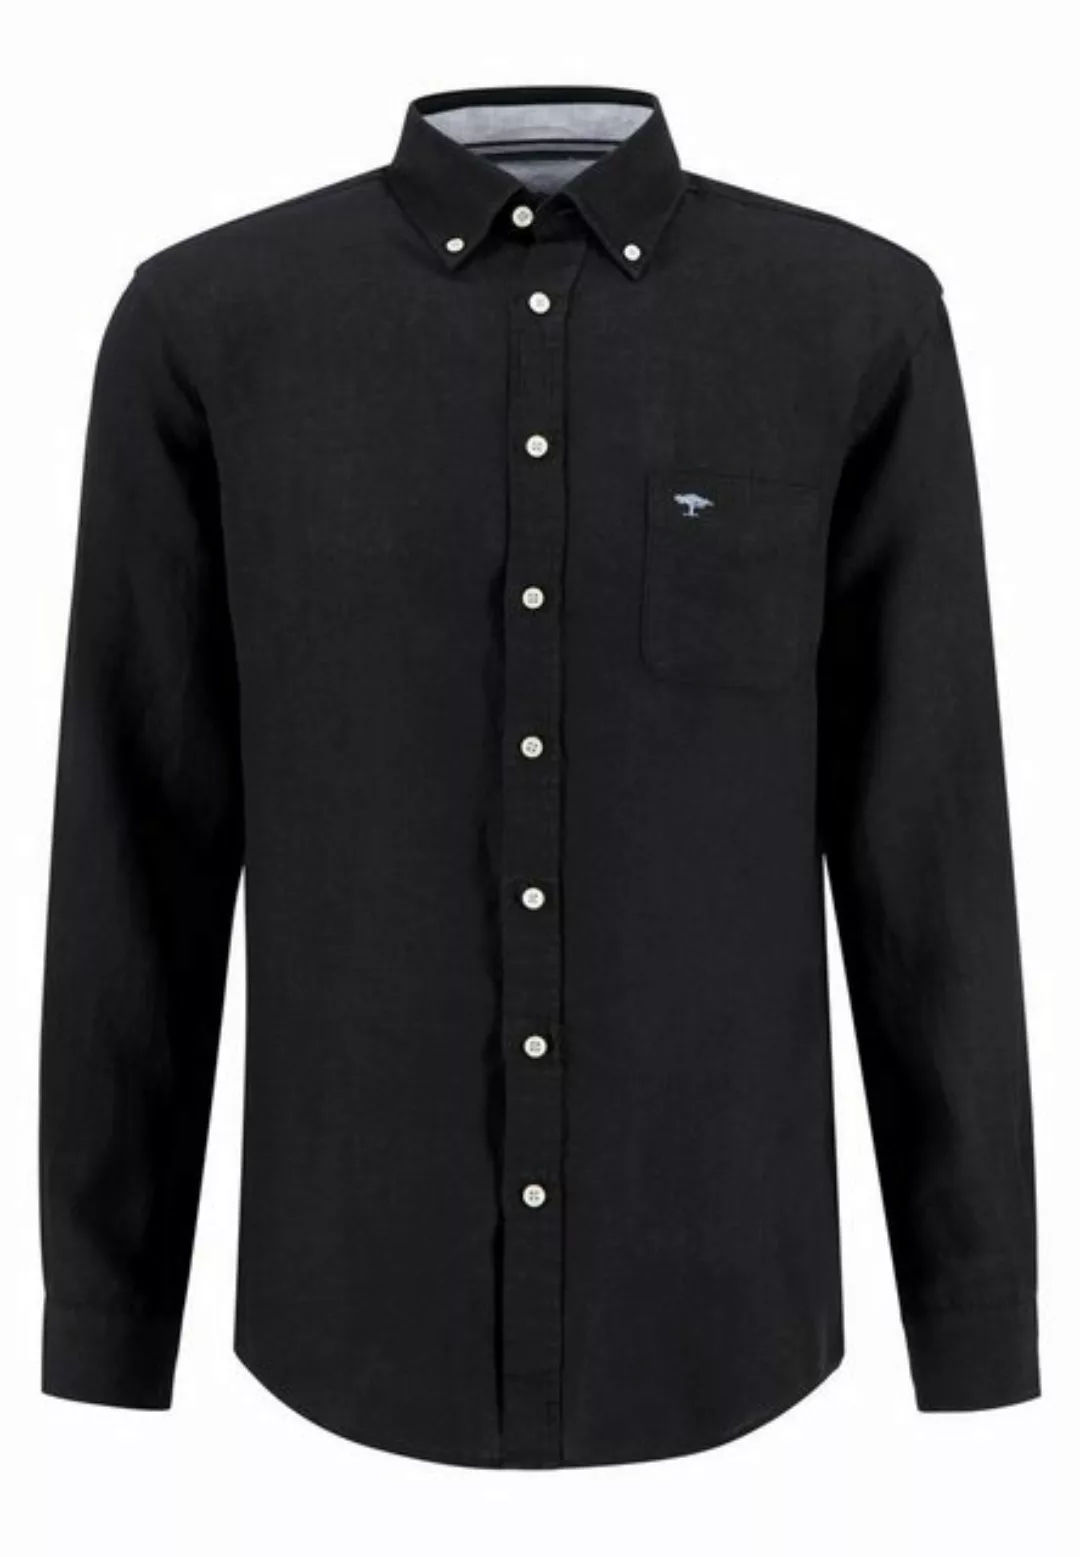 FYNCH-HATTON Leinenhemd Premium Leinenhemd günstig online kaufen